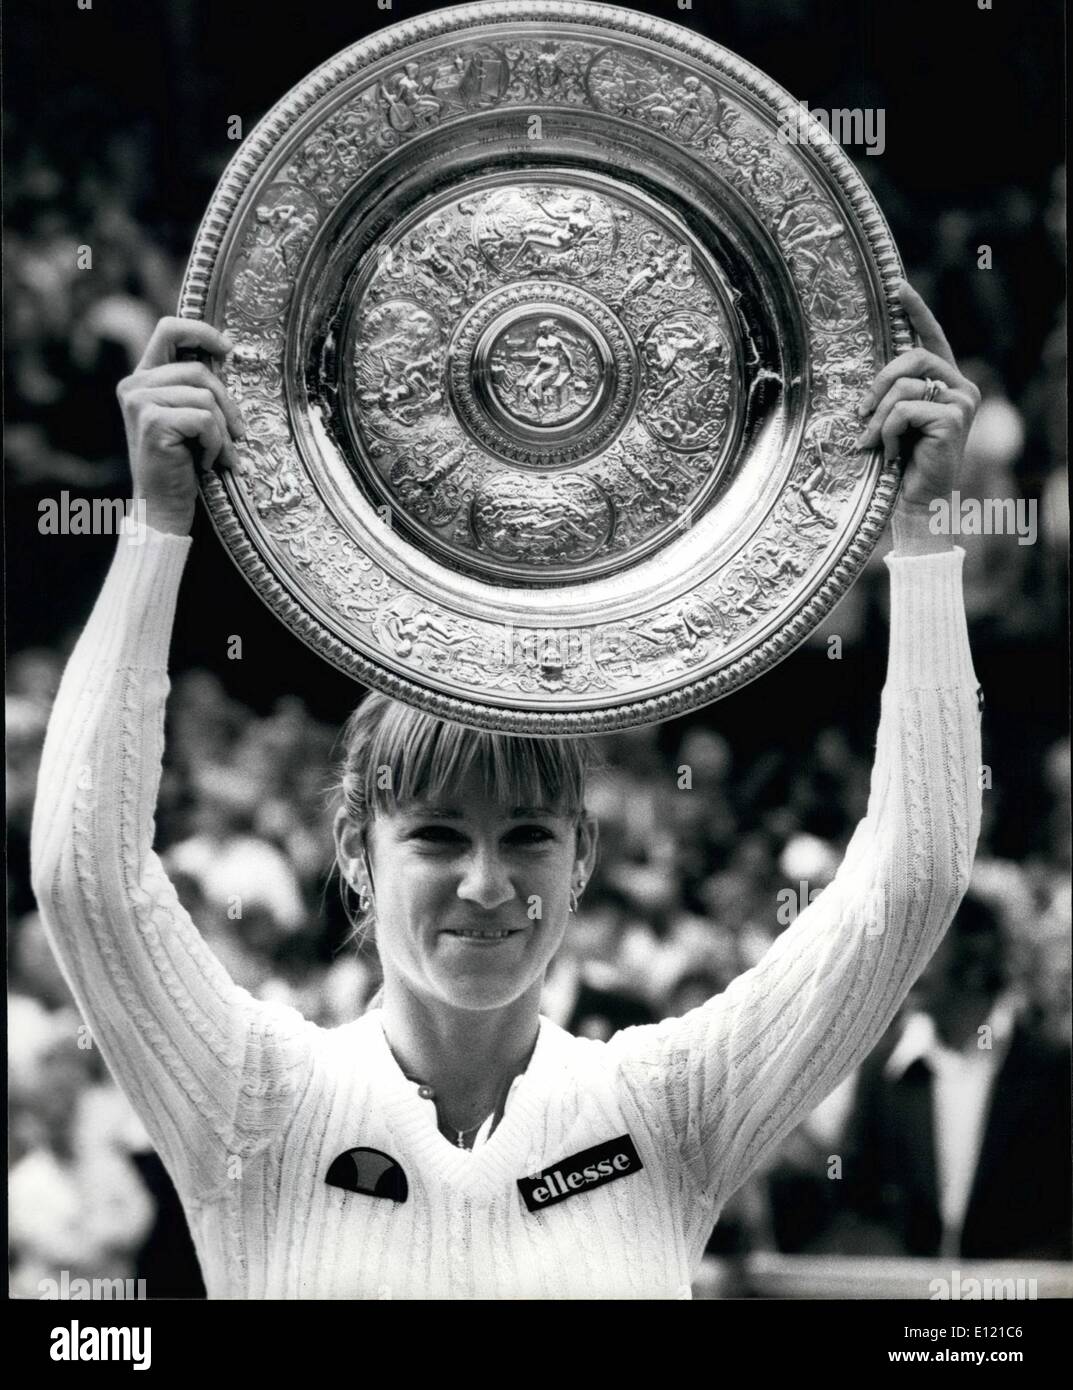 7. Juli 1981 - Chris Evert-Lloyd gewinnt das Damen Finale: Die Nr. 1 Damen Samen, die Chris Ever-Lloyd die Damen Einzel Finale auf dem Centrecourt in Wimbledon heute, gewann wenn sie die 19 jährige Tschechische Mandikeve von 6-2 6-2 schlagen. Phot zeigt Chris Lloyd hält die Trophäe nach heute den Einzel-Titel in Wimbledon zu gewinnen. Stockfoto